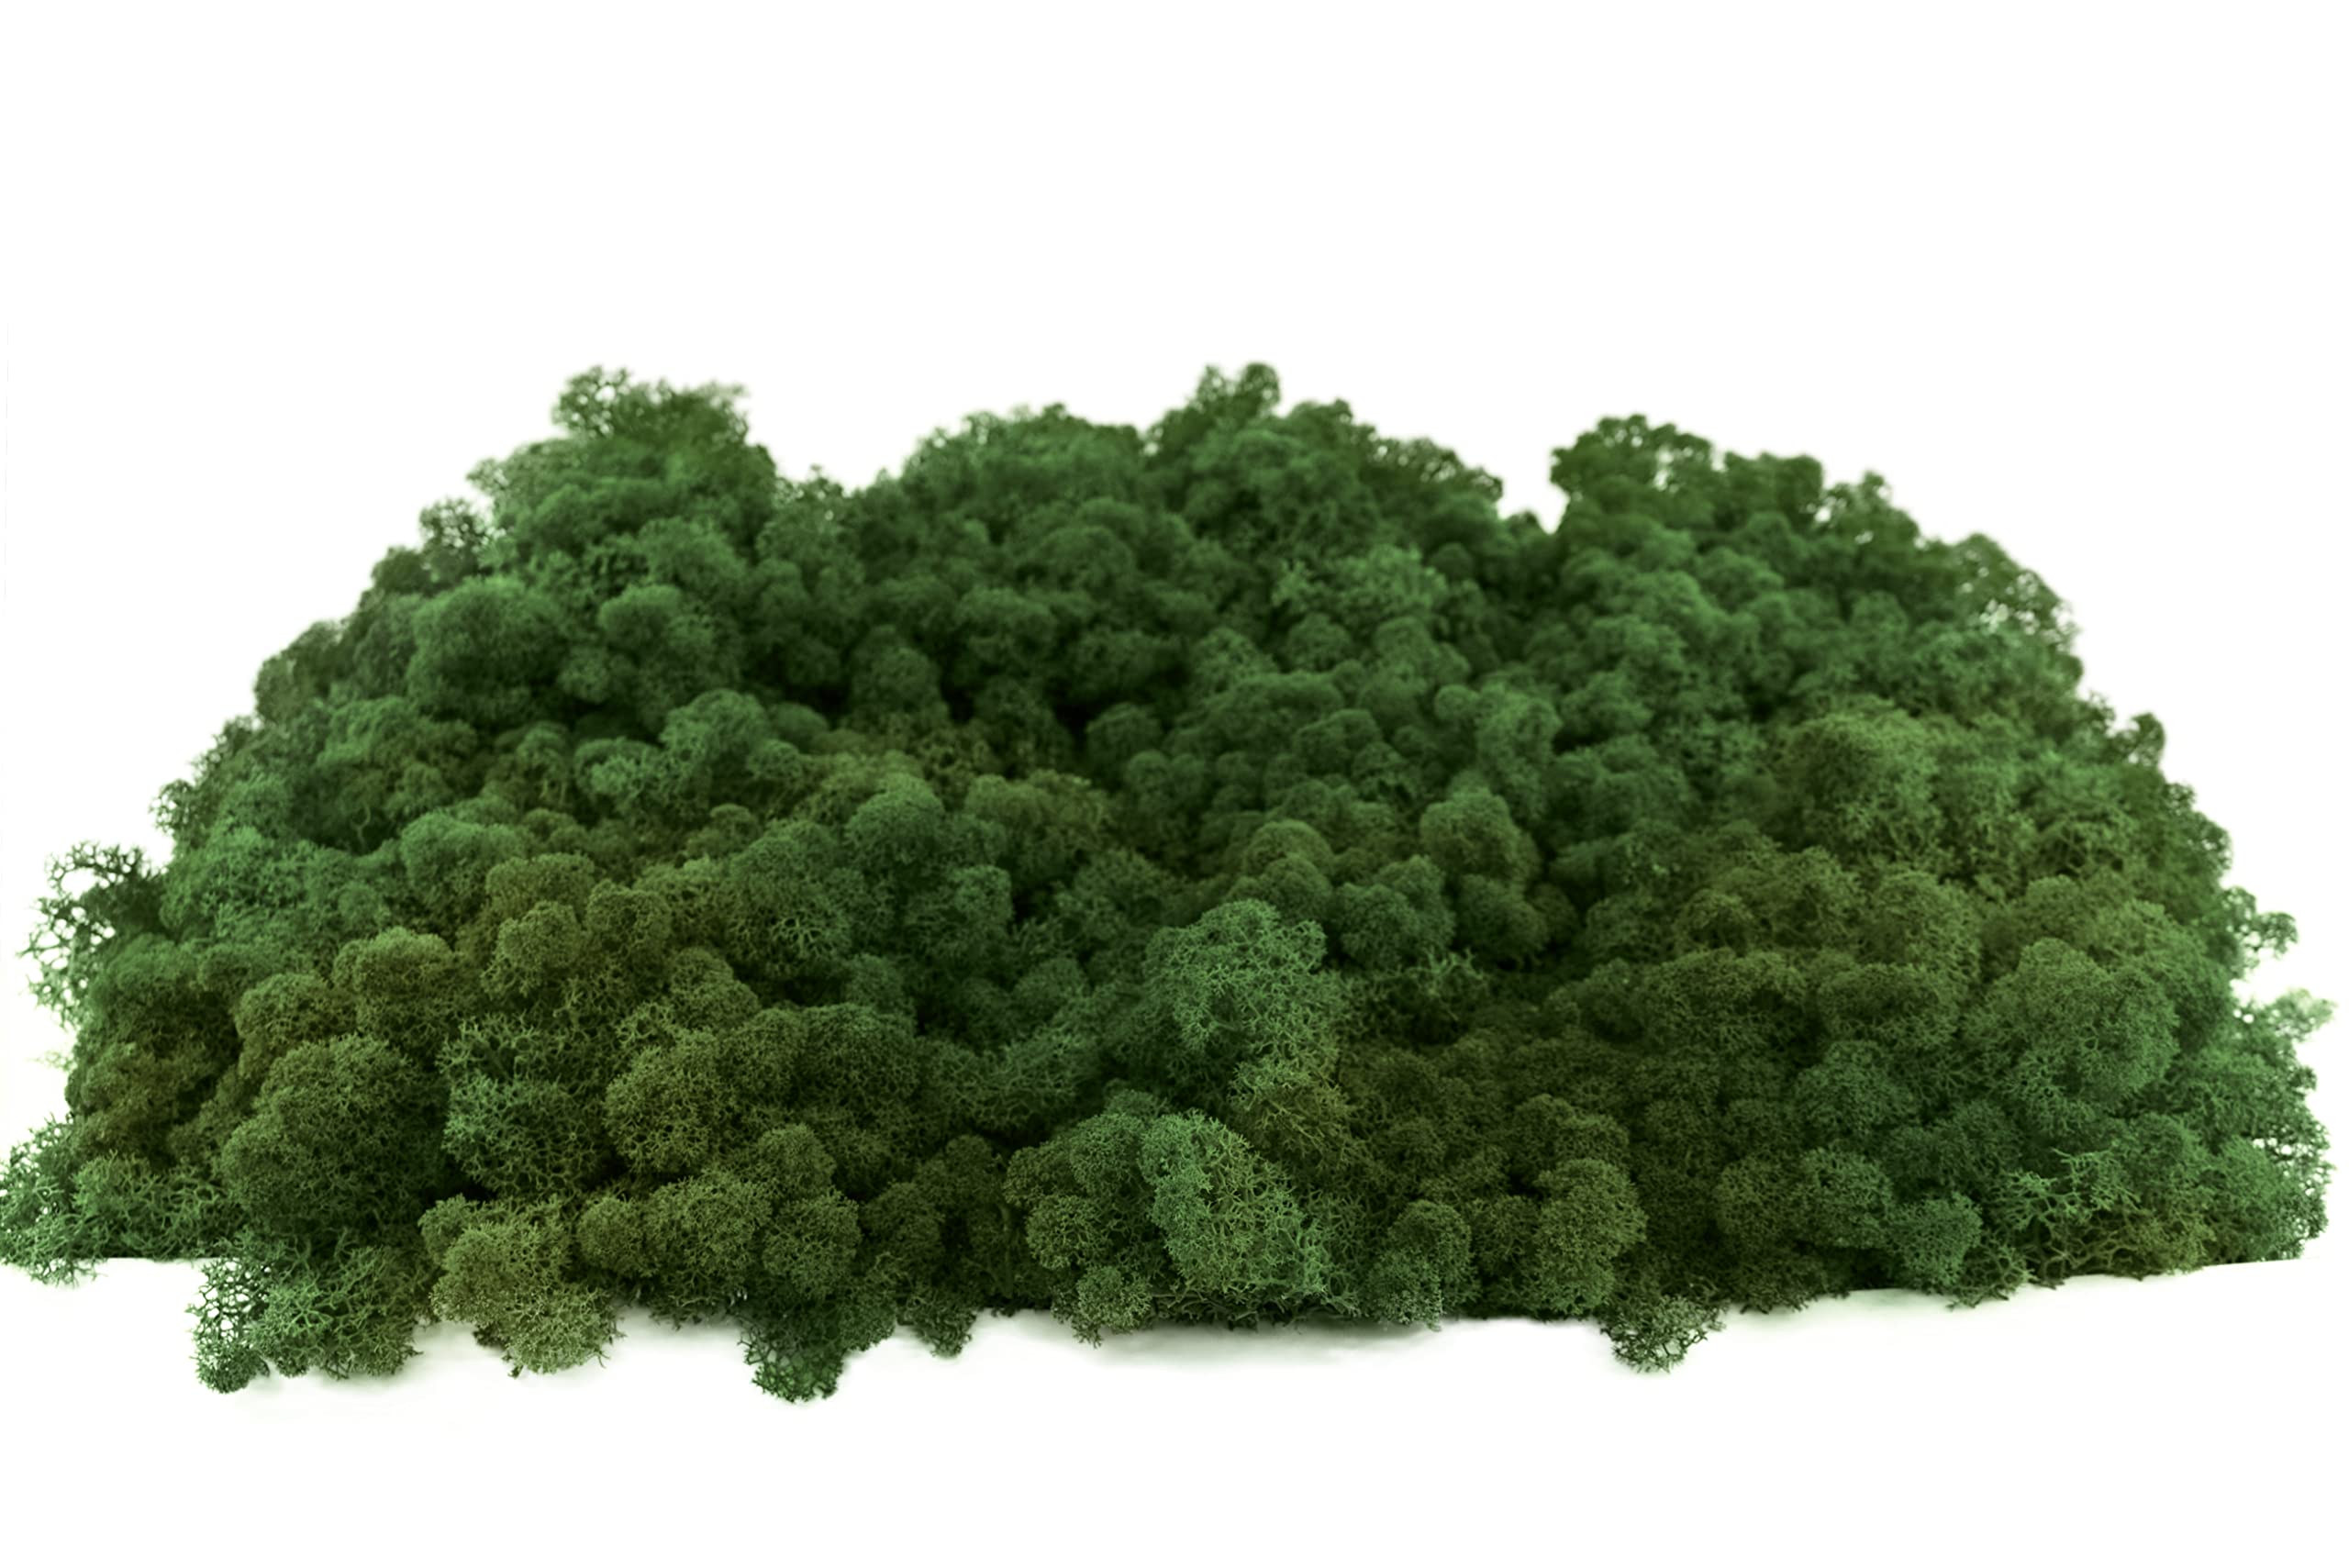 INMO Moos - Islandmoos echtes Natur Moos konserviert 500g Laubgrün. Dekomoos zum Basteln, Moosbild, Wand-Bilder, Wanddeko, Modellbau weitere Farben und Mengen zur Auswahl 40g - 500g 1 KG - 4 KG